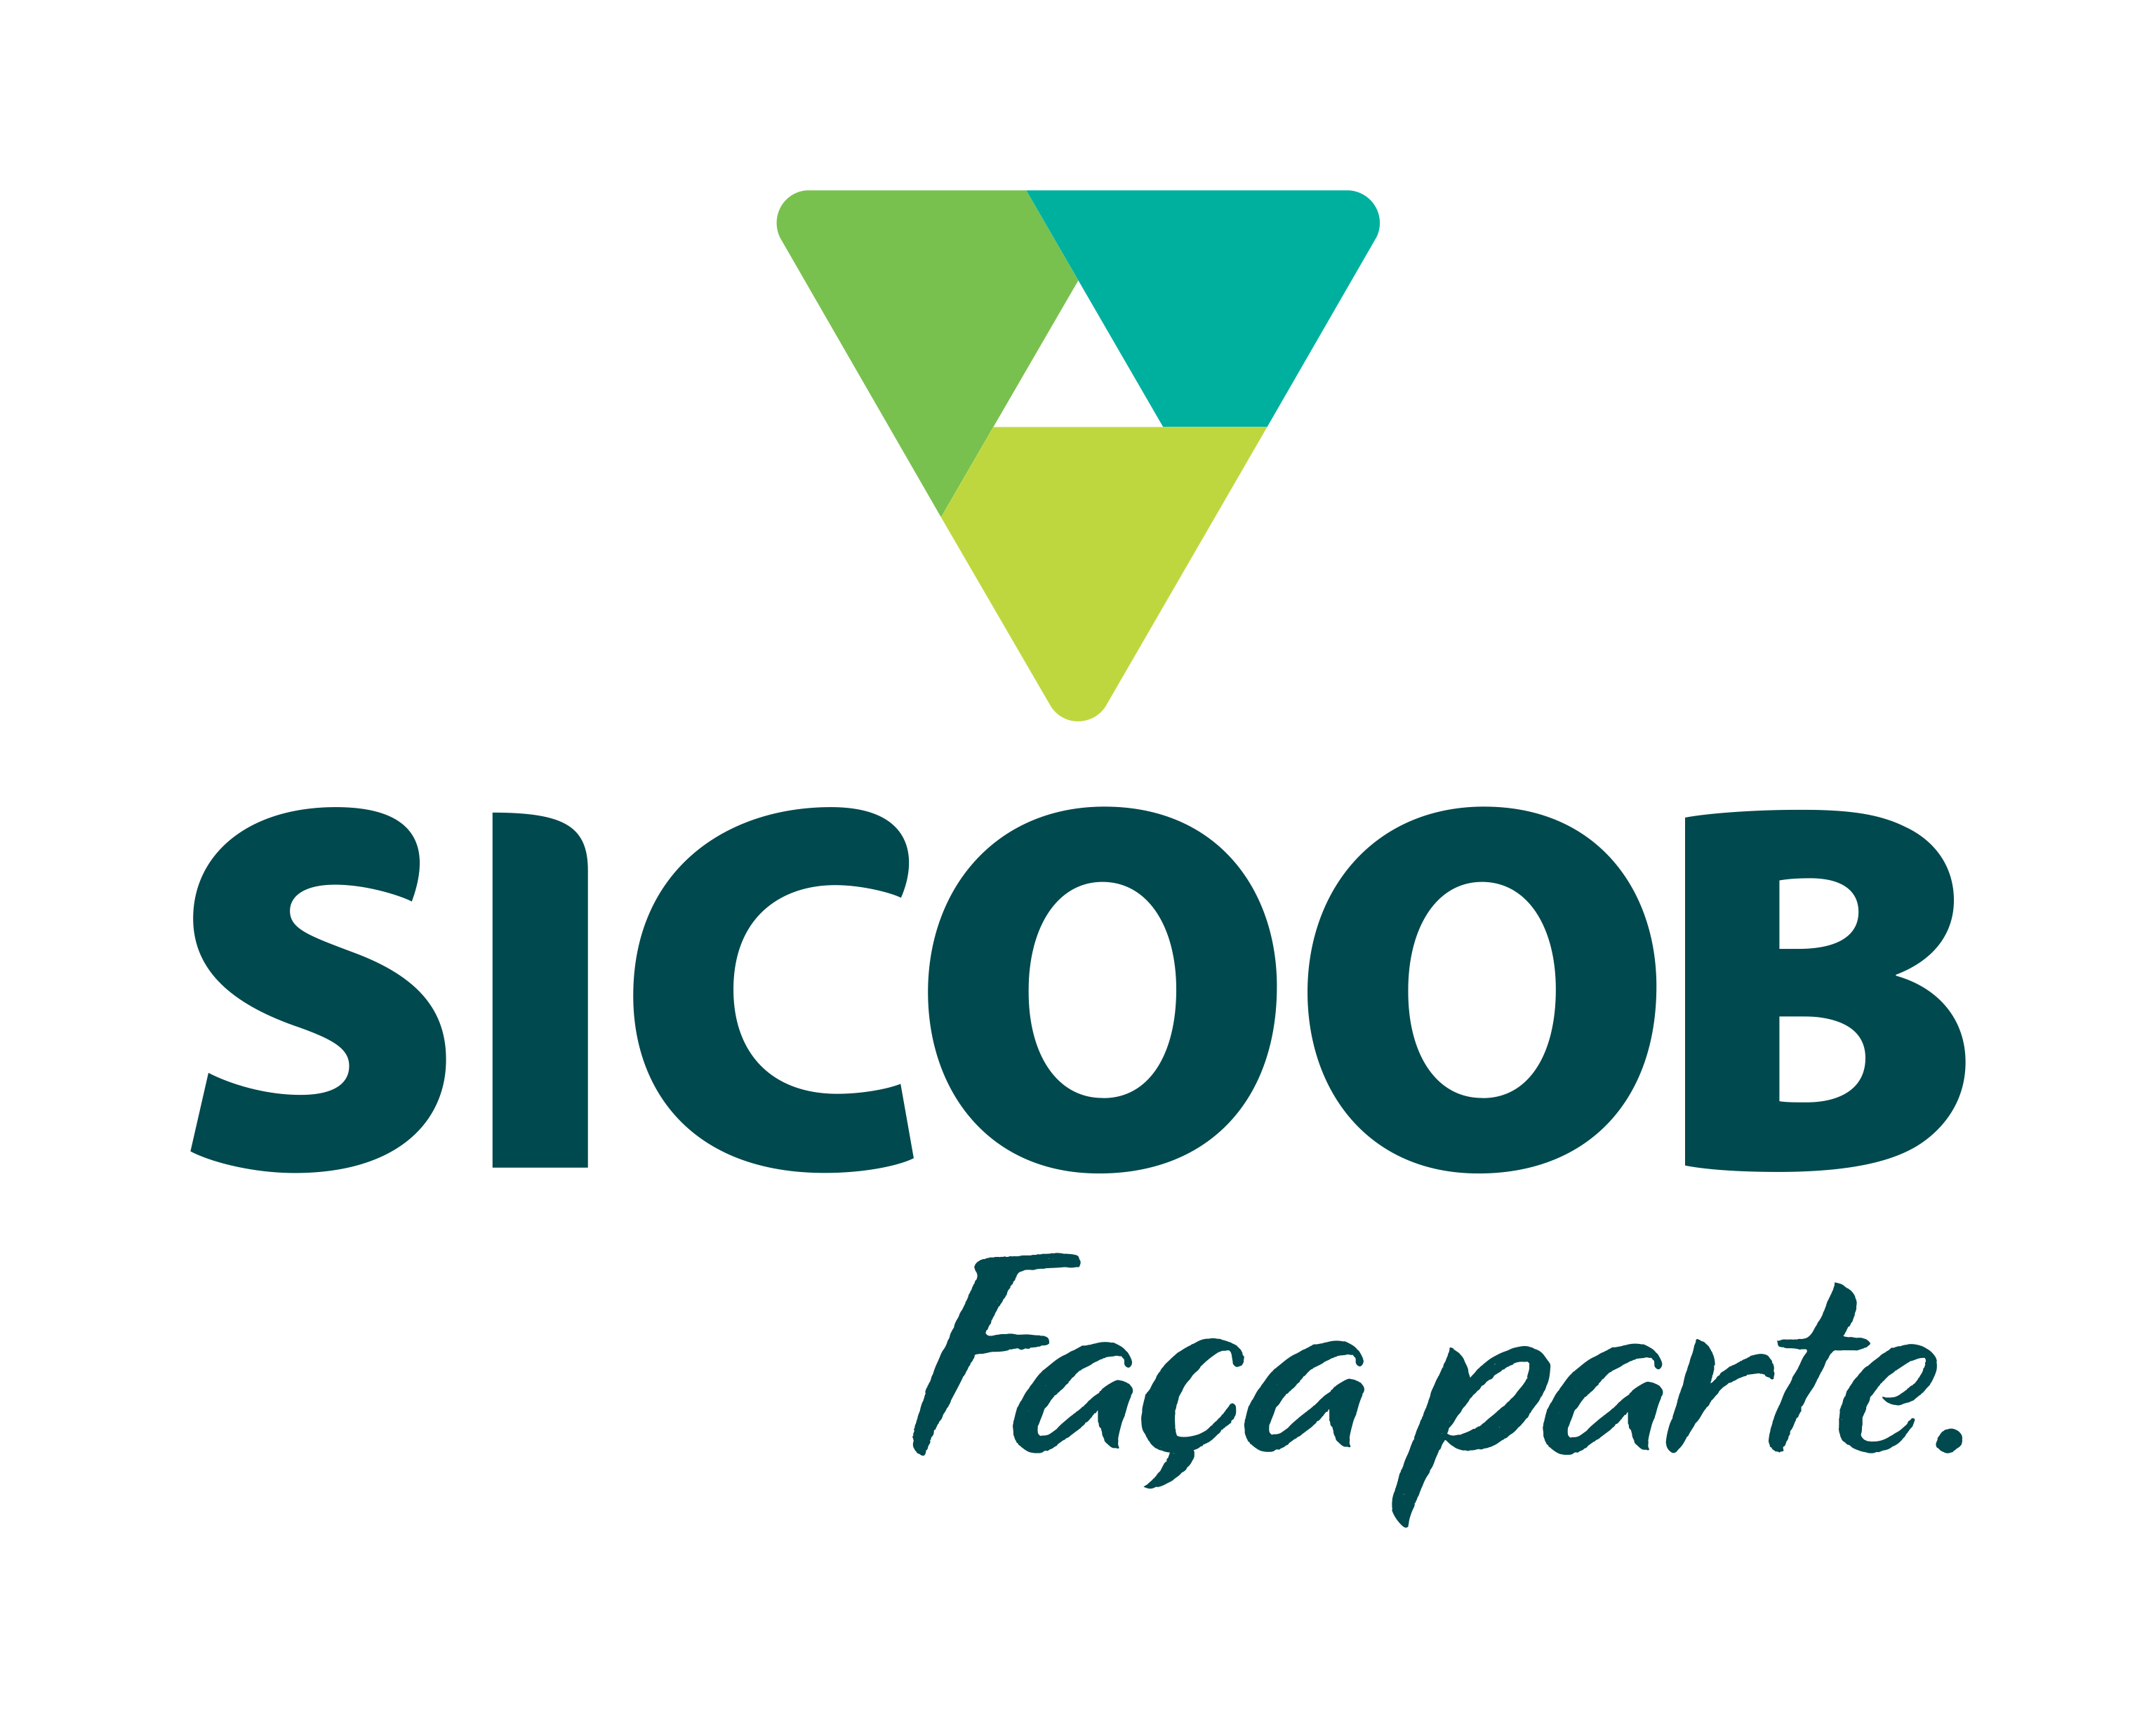 Sicoob - Faça parte